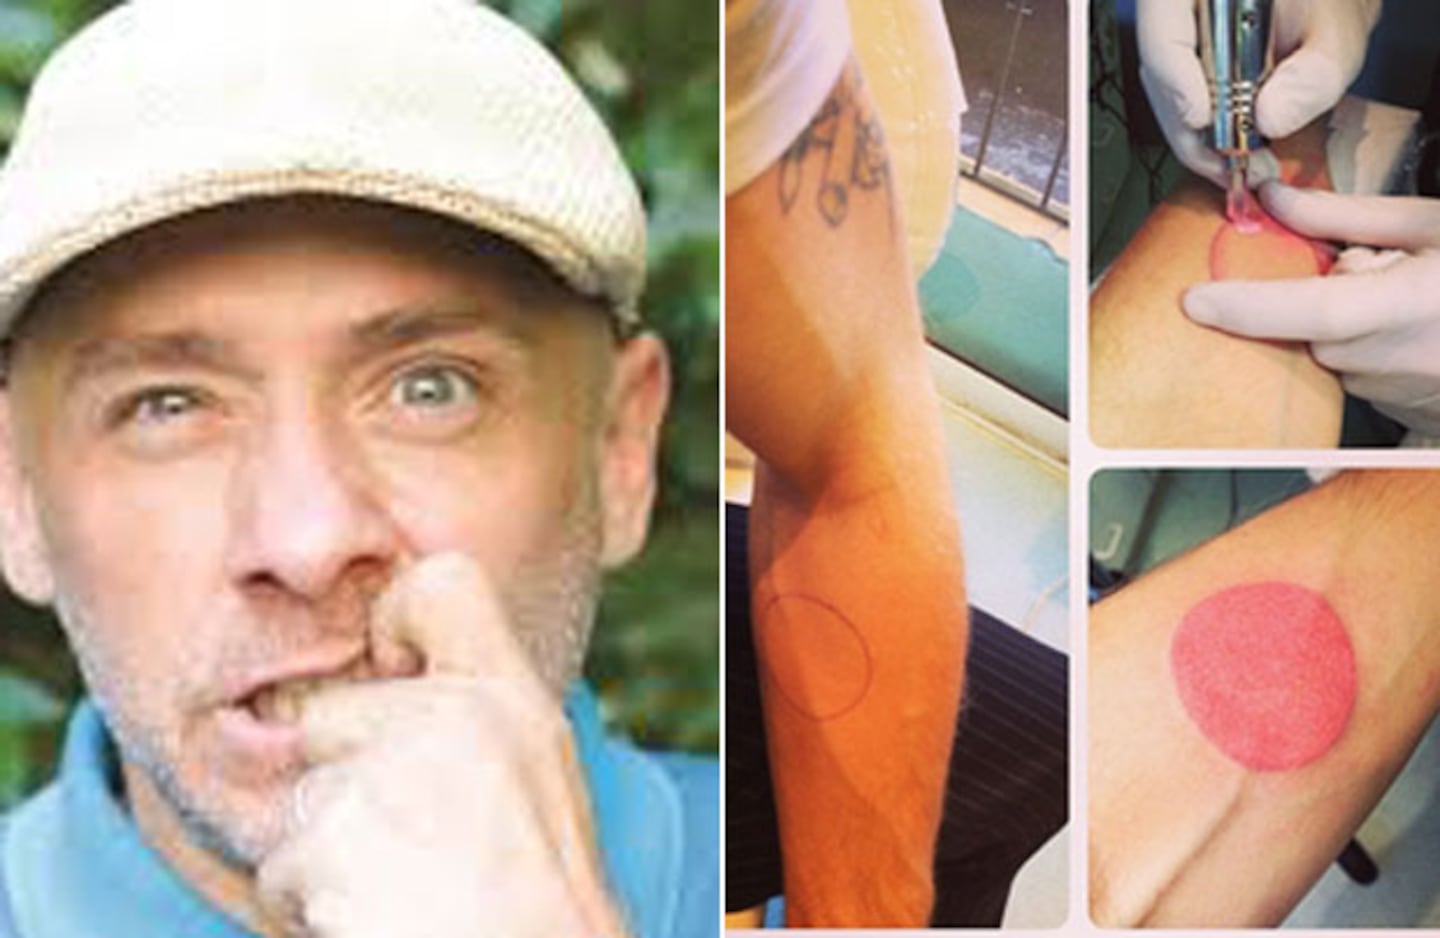 El nuevo tatuaje de Ronnie Arias. (Fotos: Gentileza Mara Folch e Instagram.com/ronaldo1ro)